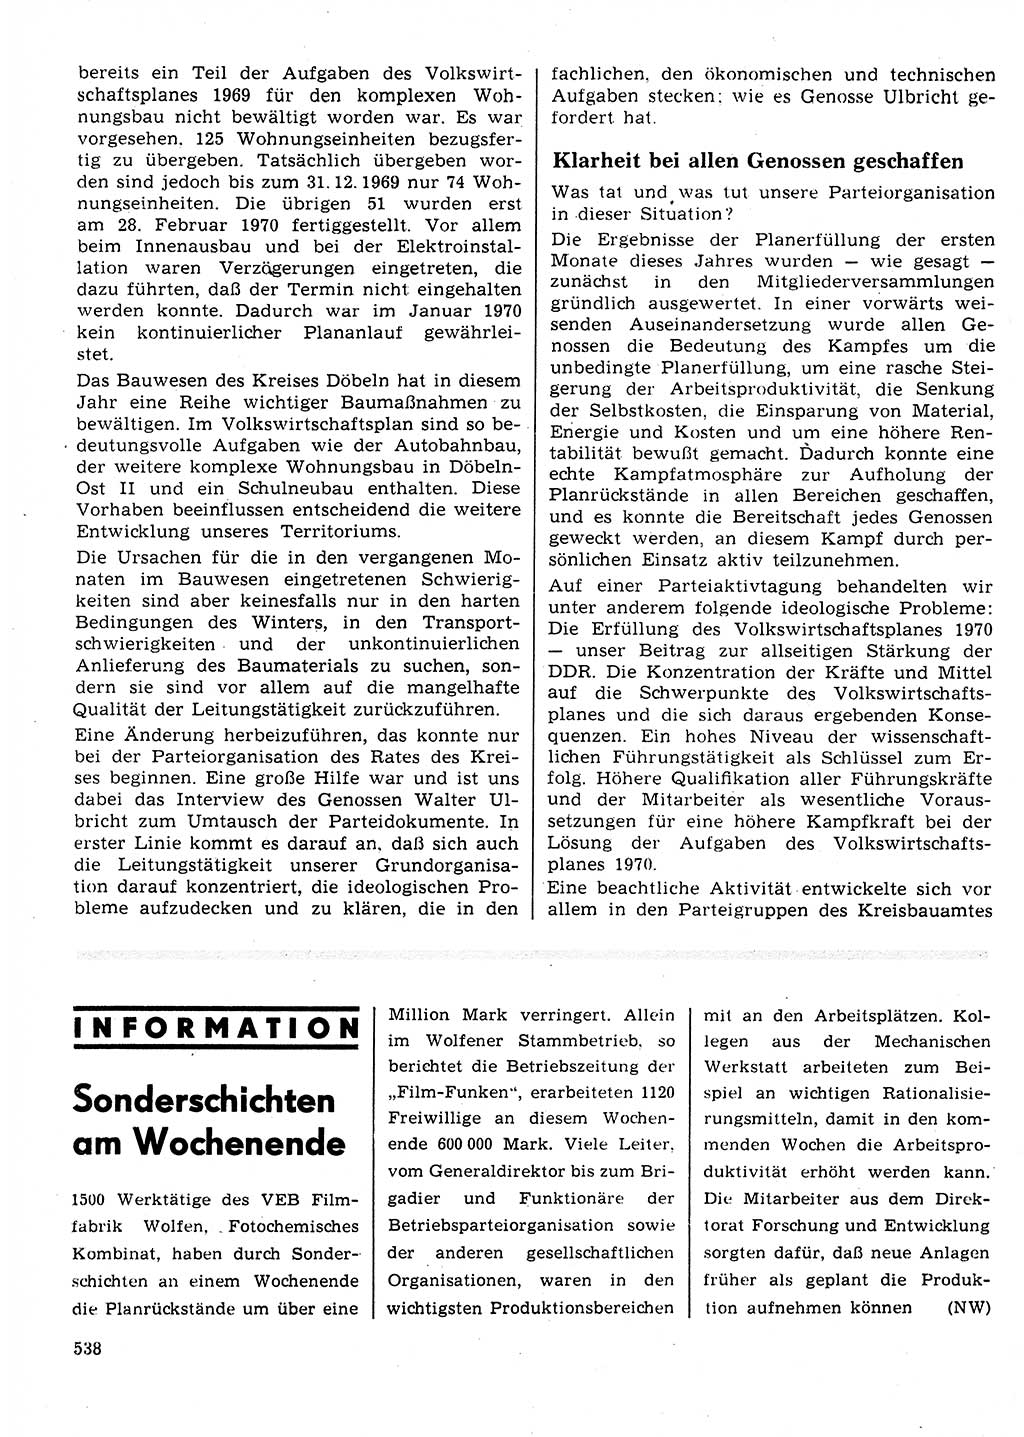 Neuer Weg (NW), Organ des Zentralkomitees (ZK) der SED (Sozialistische Einheitspartei Deutschlands) für Fragen des Parteilebens, 25. Jahrgang [Deutsche Demokratische Republik (DDR)] 1970, Seite 538 (NW ZK SED DDR 1970, S. 538)